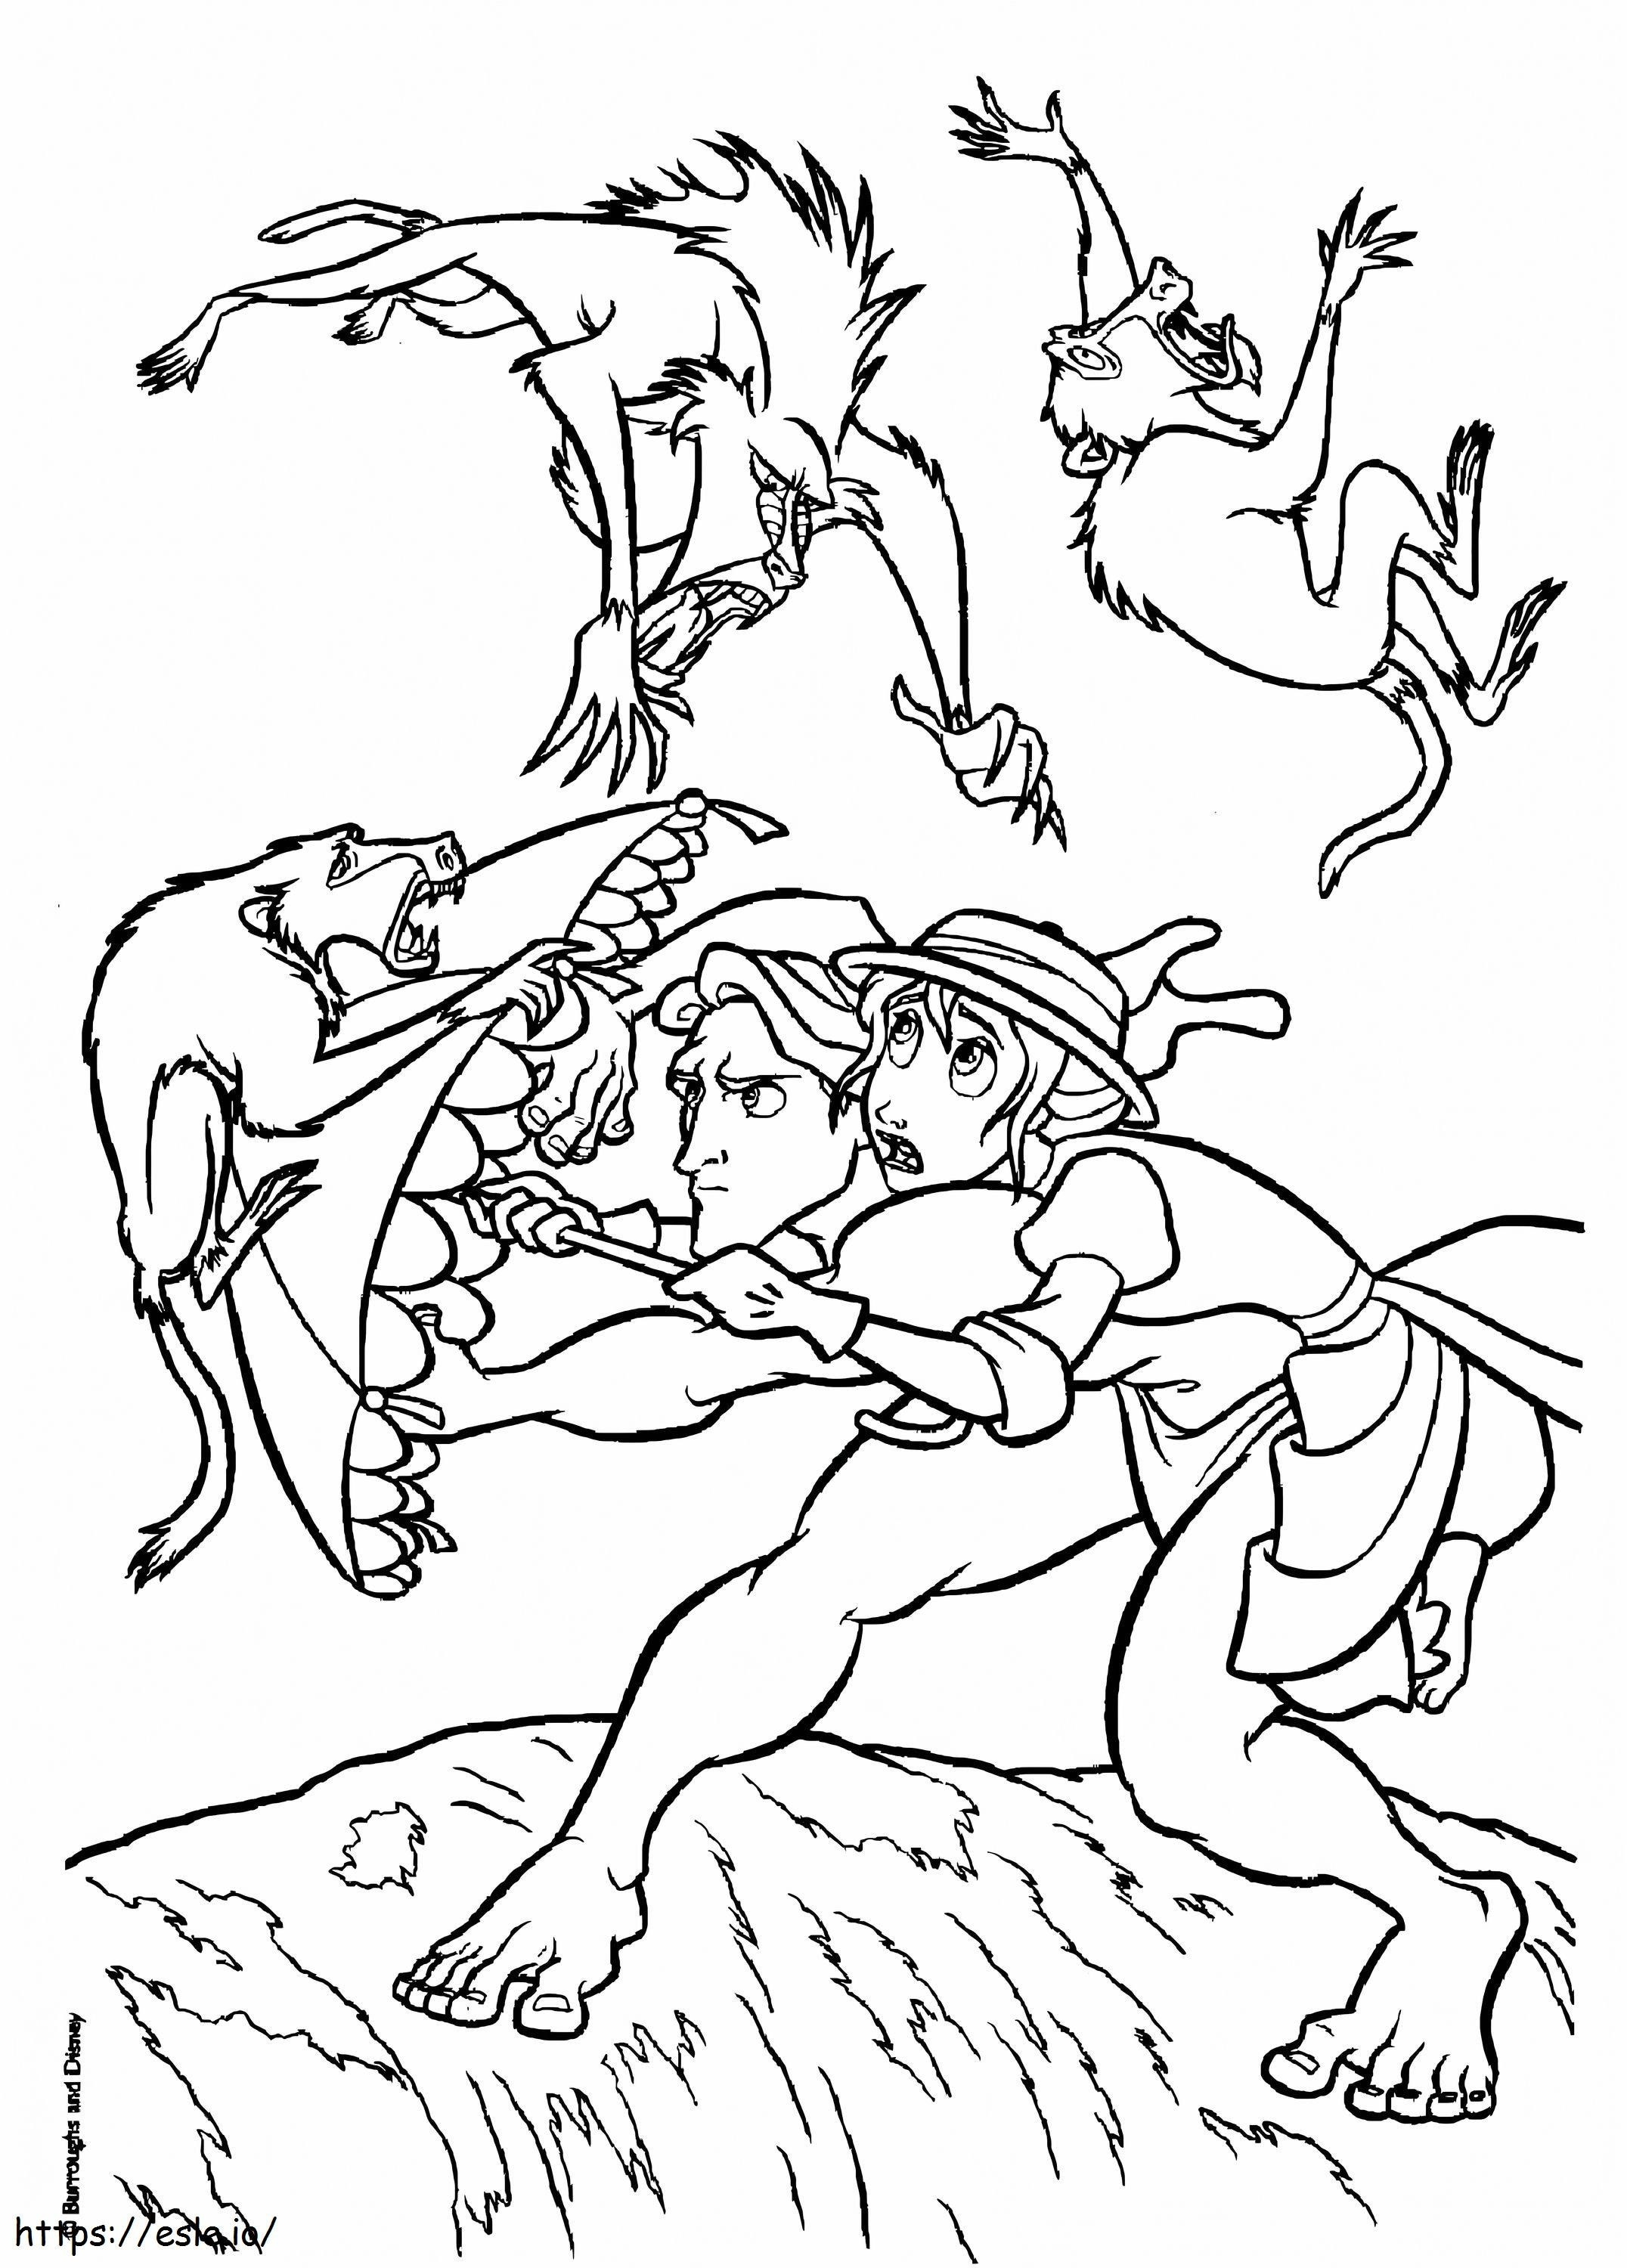 Tarzan și Jane Vs Animale de colorat